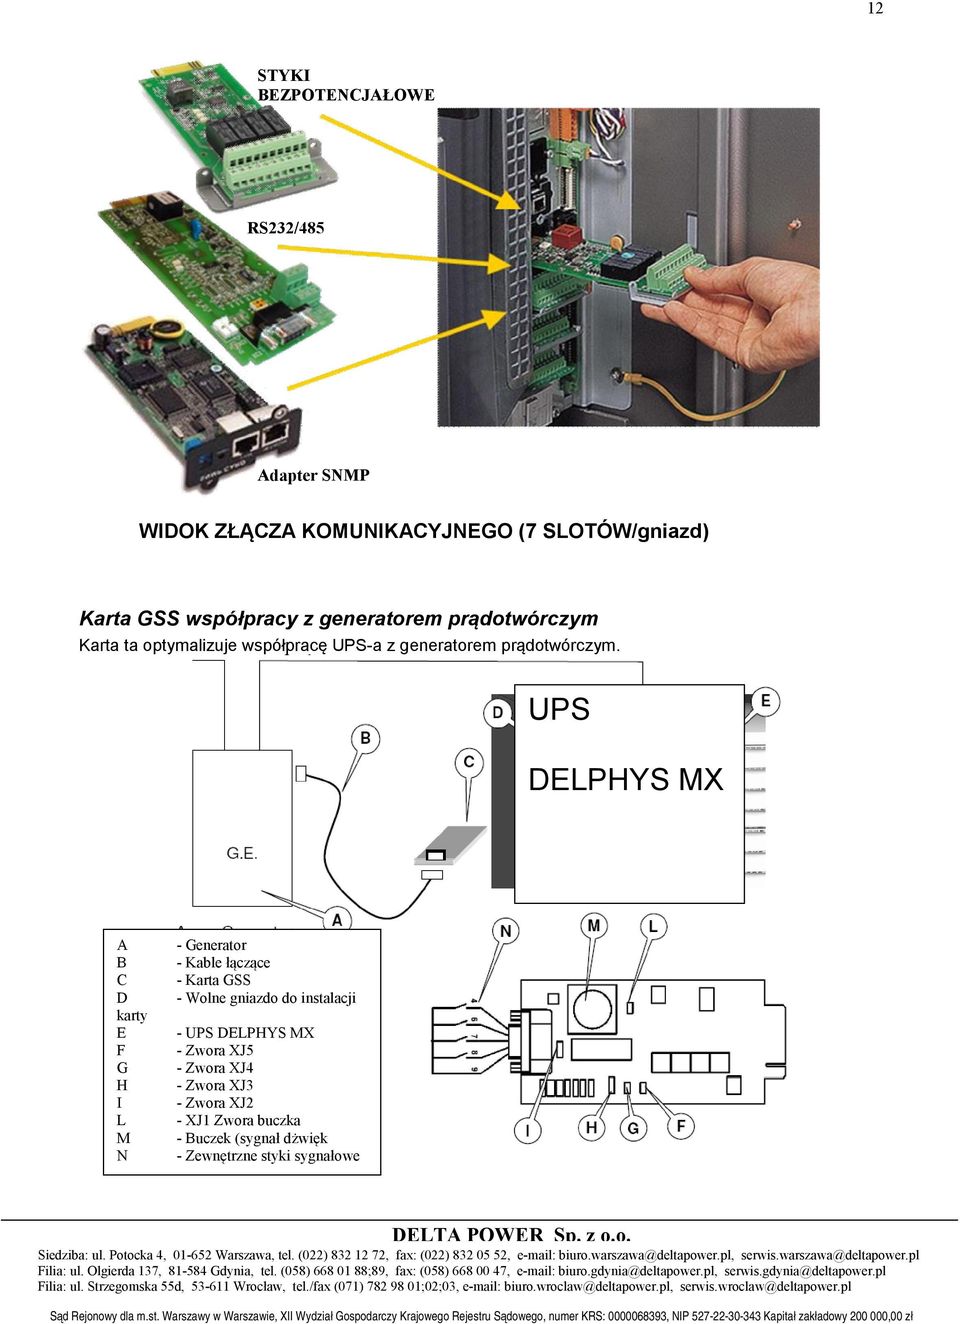 UPS DELPHYS MX A B C D karty E F G H I L M N - Generator - Kable łączące - Karta GSS - Wolne gniazdo do instalacji